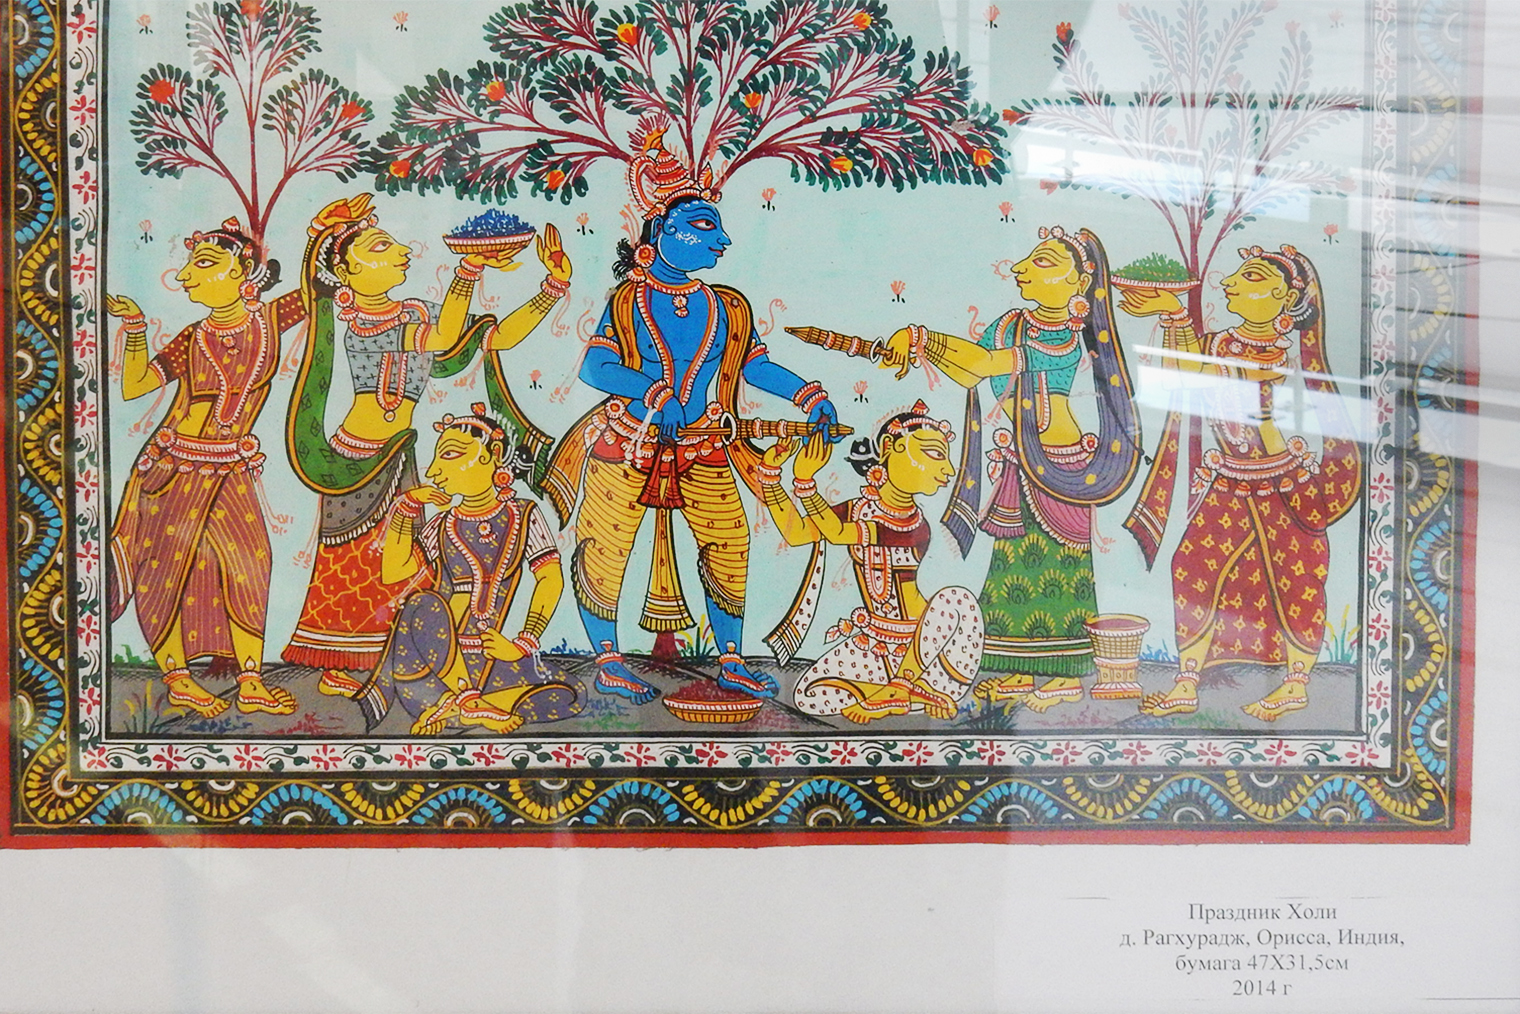 Я посетила не только индийскую ярмарку, но и выставку на эту тему: хотелось узнать больше о культуре Индии